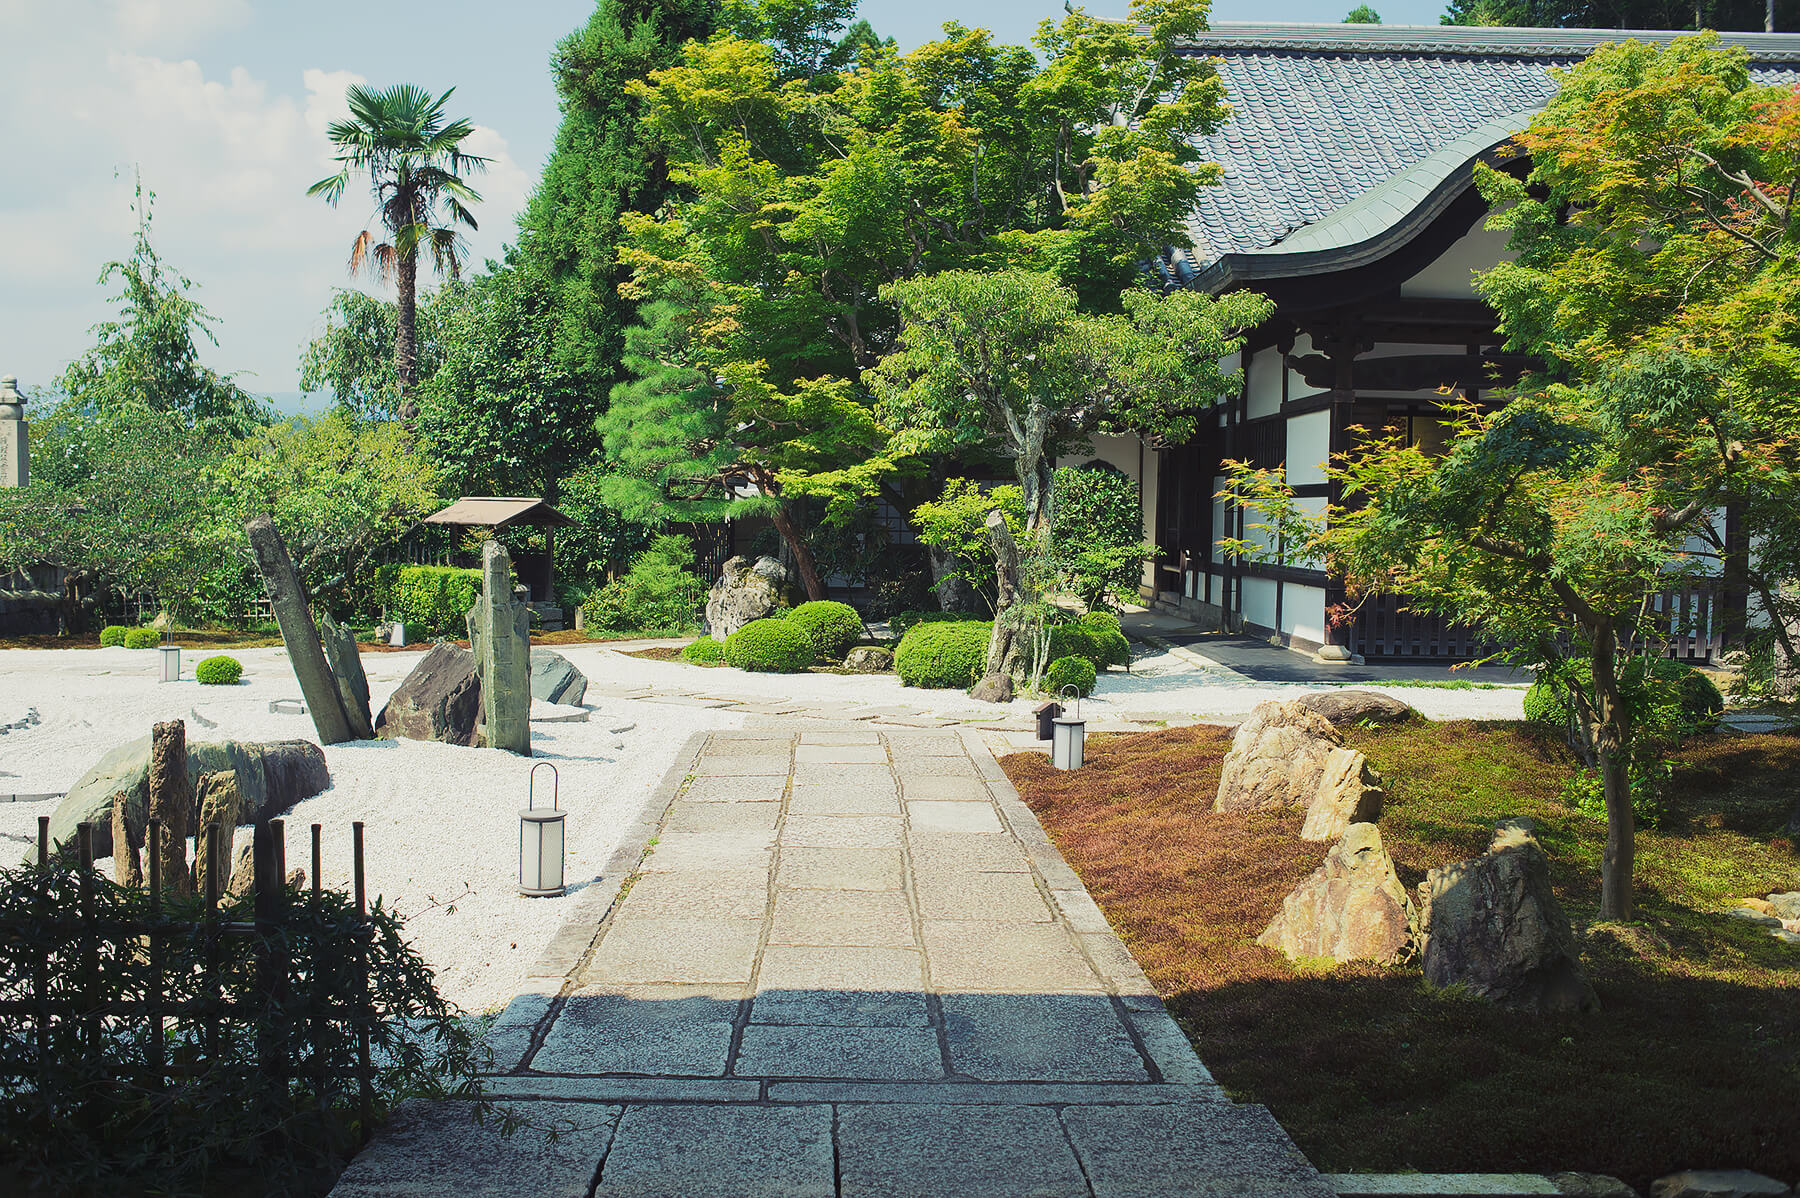 
          京都「圓光寺」の庭園写真9
      